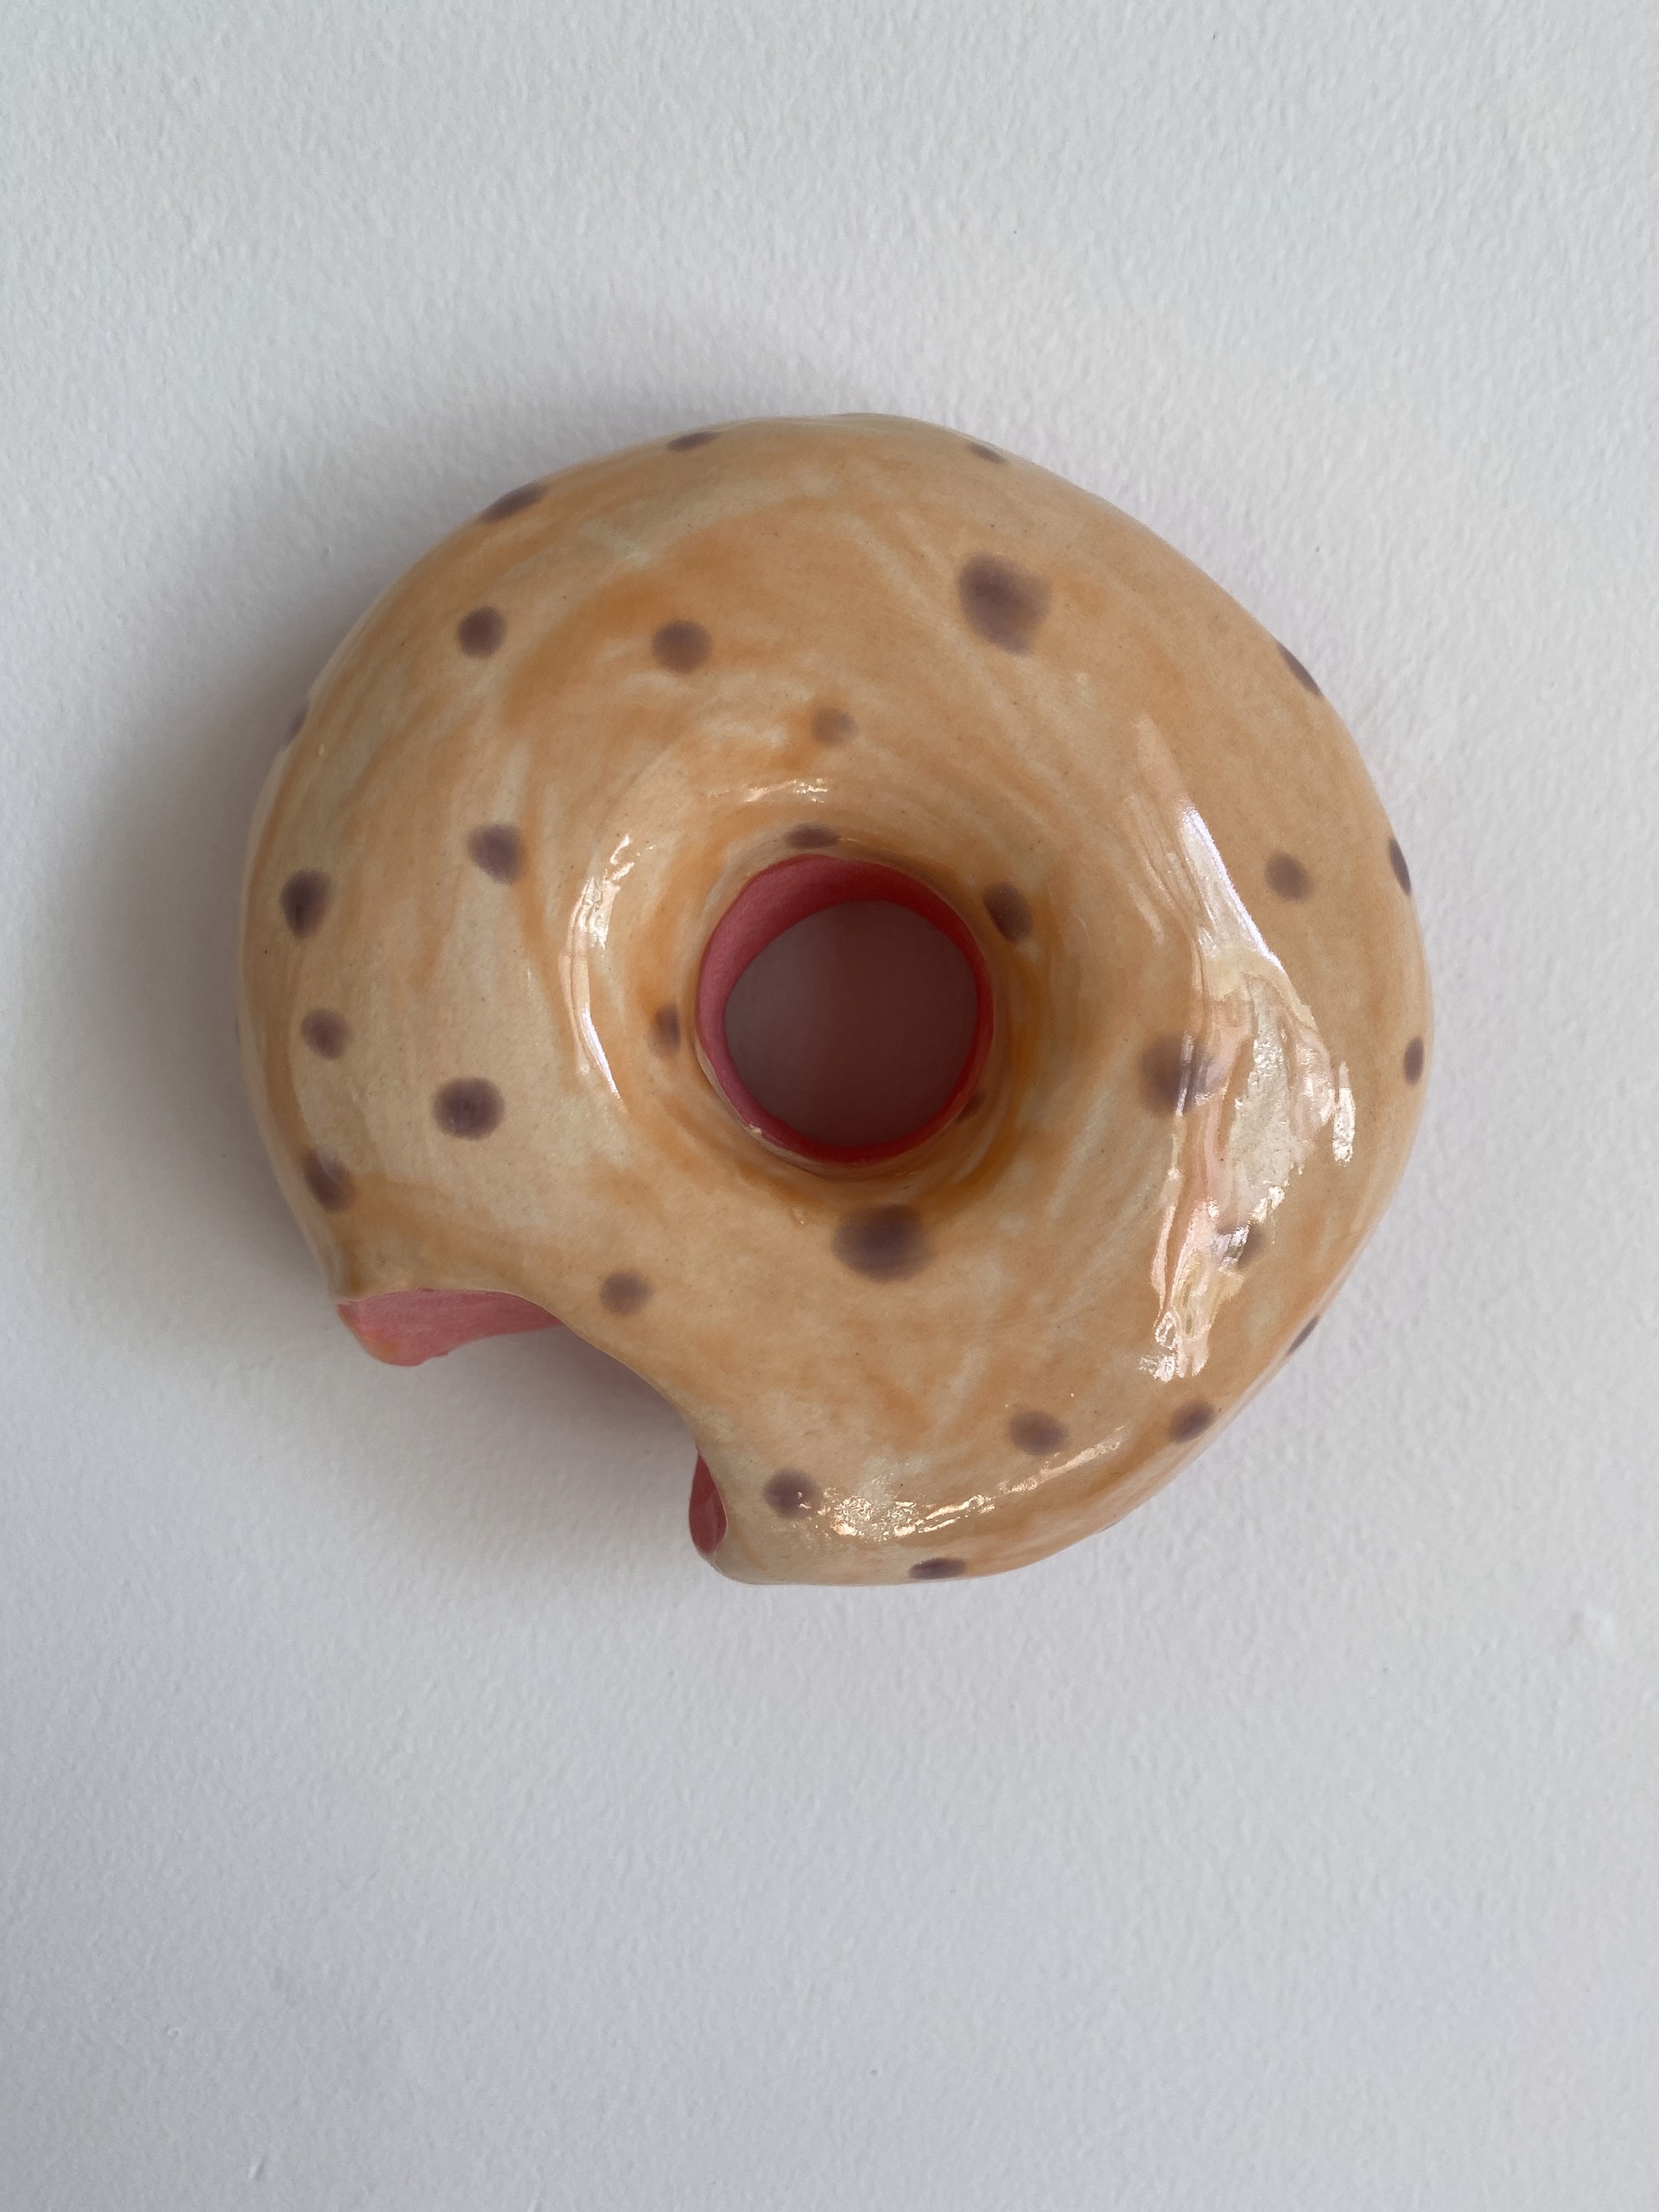 Peach Donut With Spots by Liv Antonecchia